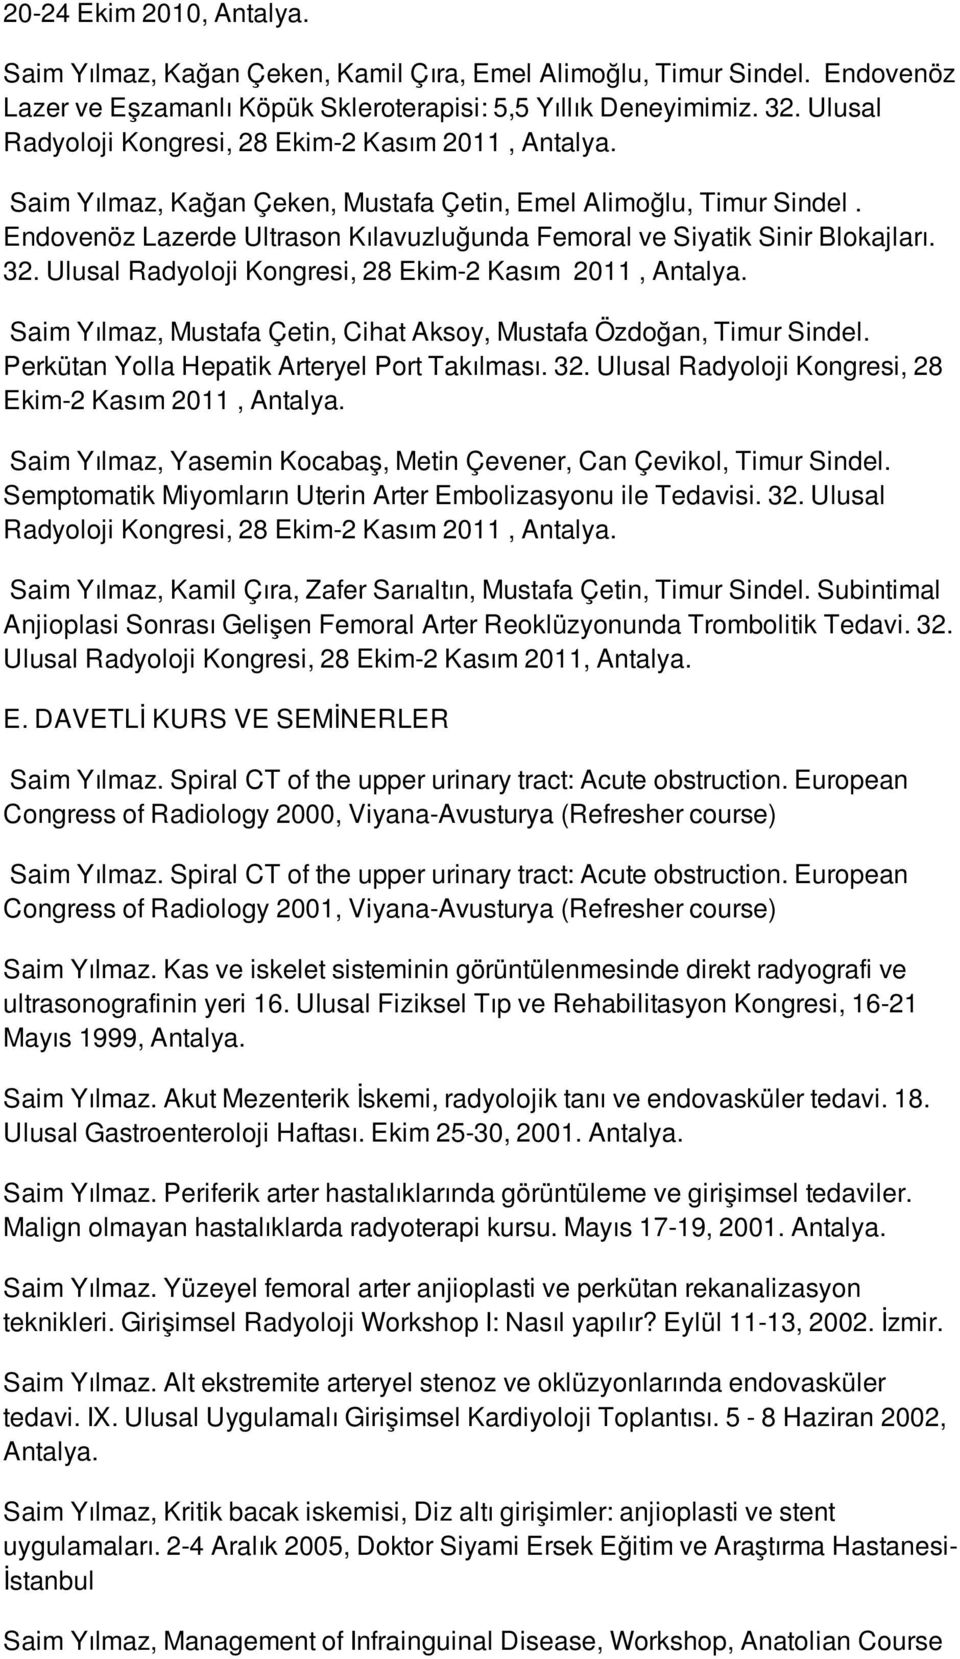 Endovenöz Lazerde Ultrason Kılavuzluğunda Femoral ve Siyatik Sinir Blokajları. 32. Ulusal Radyoloji Kongresi, 28 Ekim-2 Kasım 2011, Antalya.